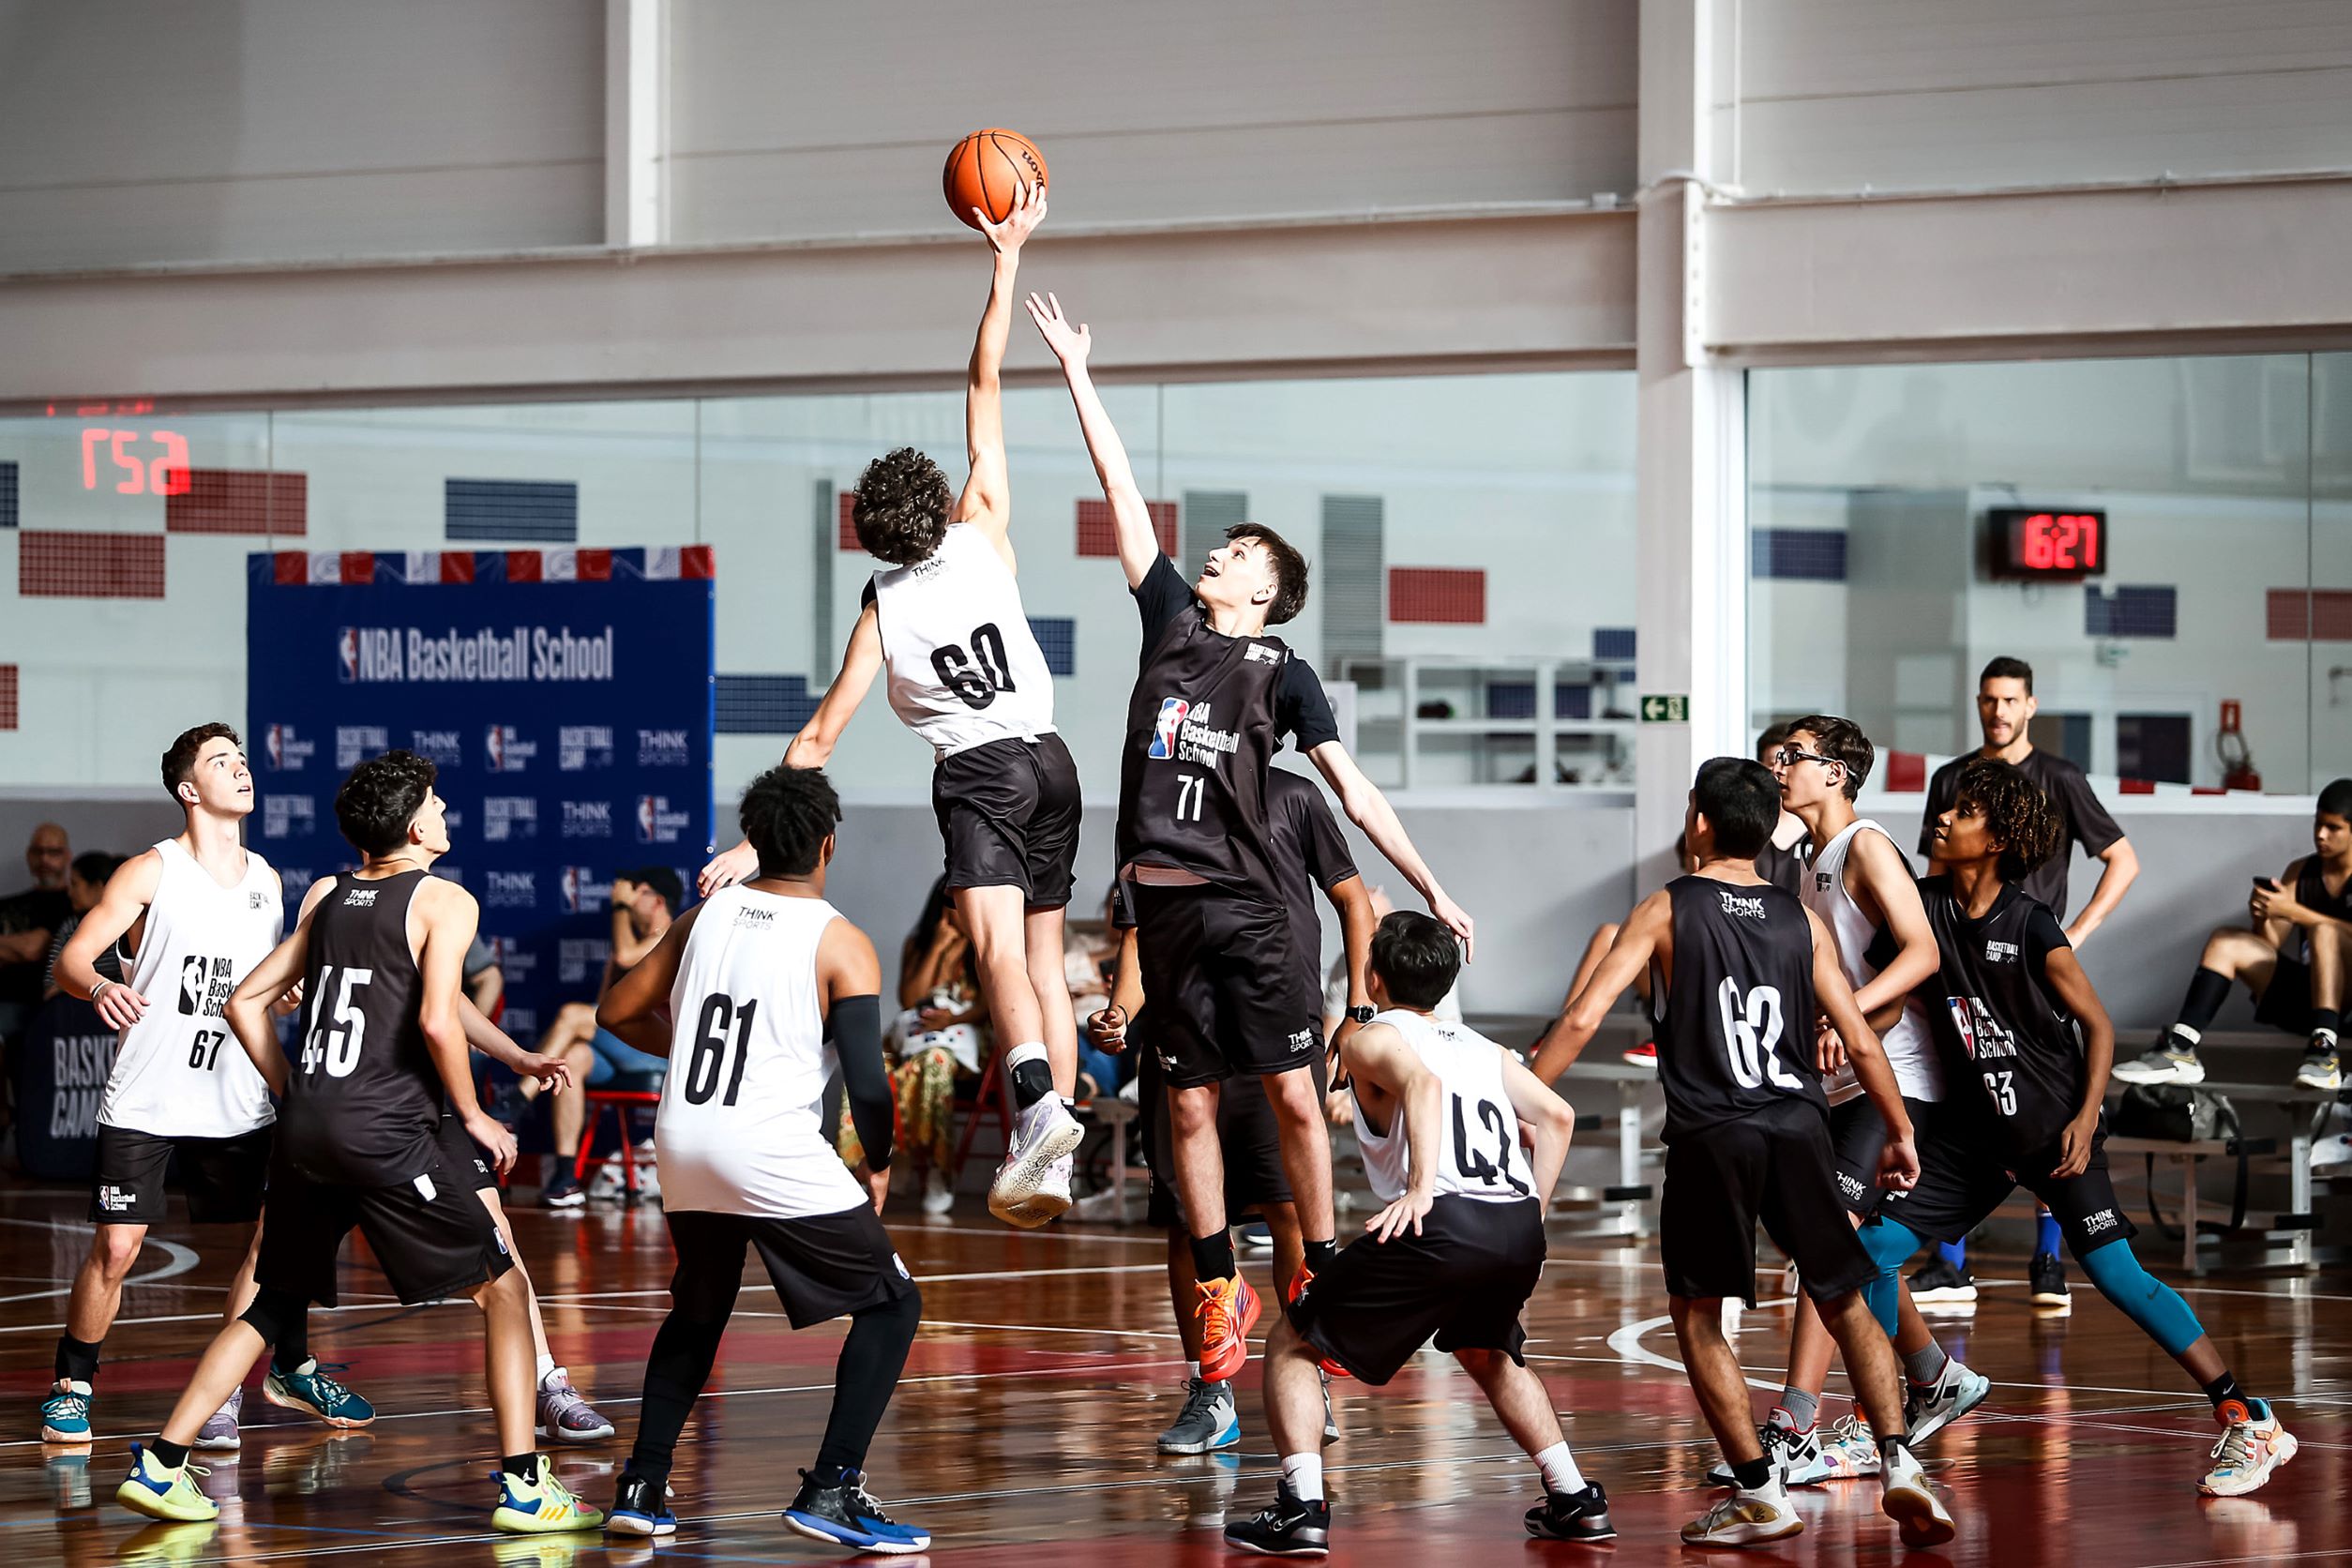 Basketball Camp reuniu quase 90 meninos em fim de semana de experiências, emoção e inspiração